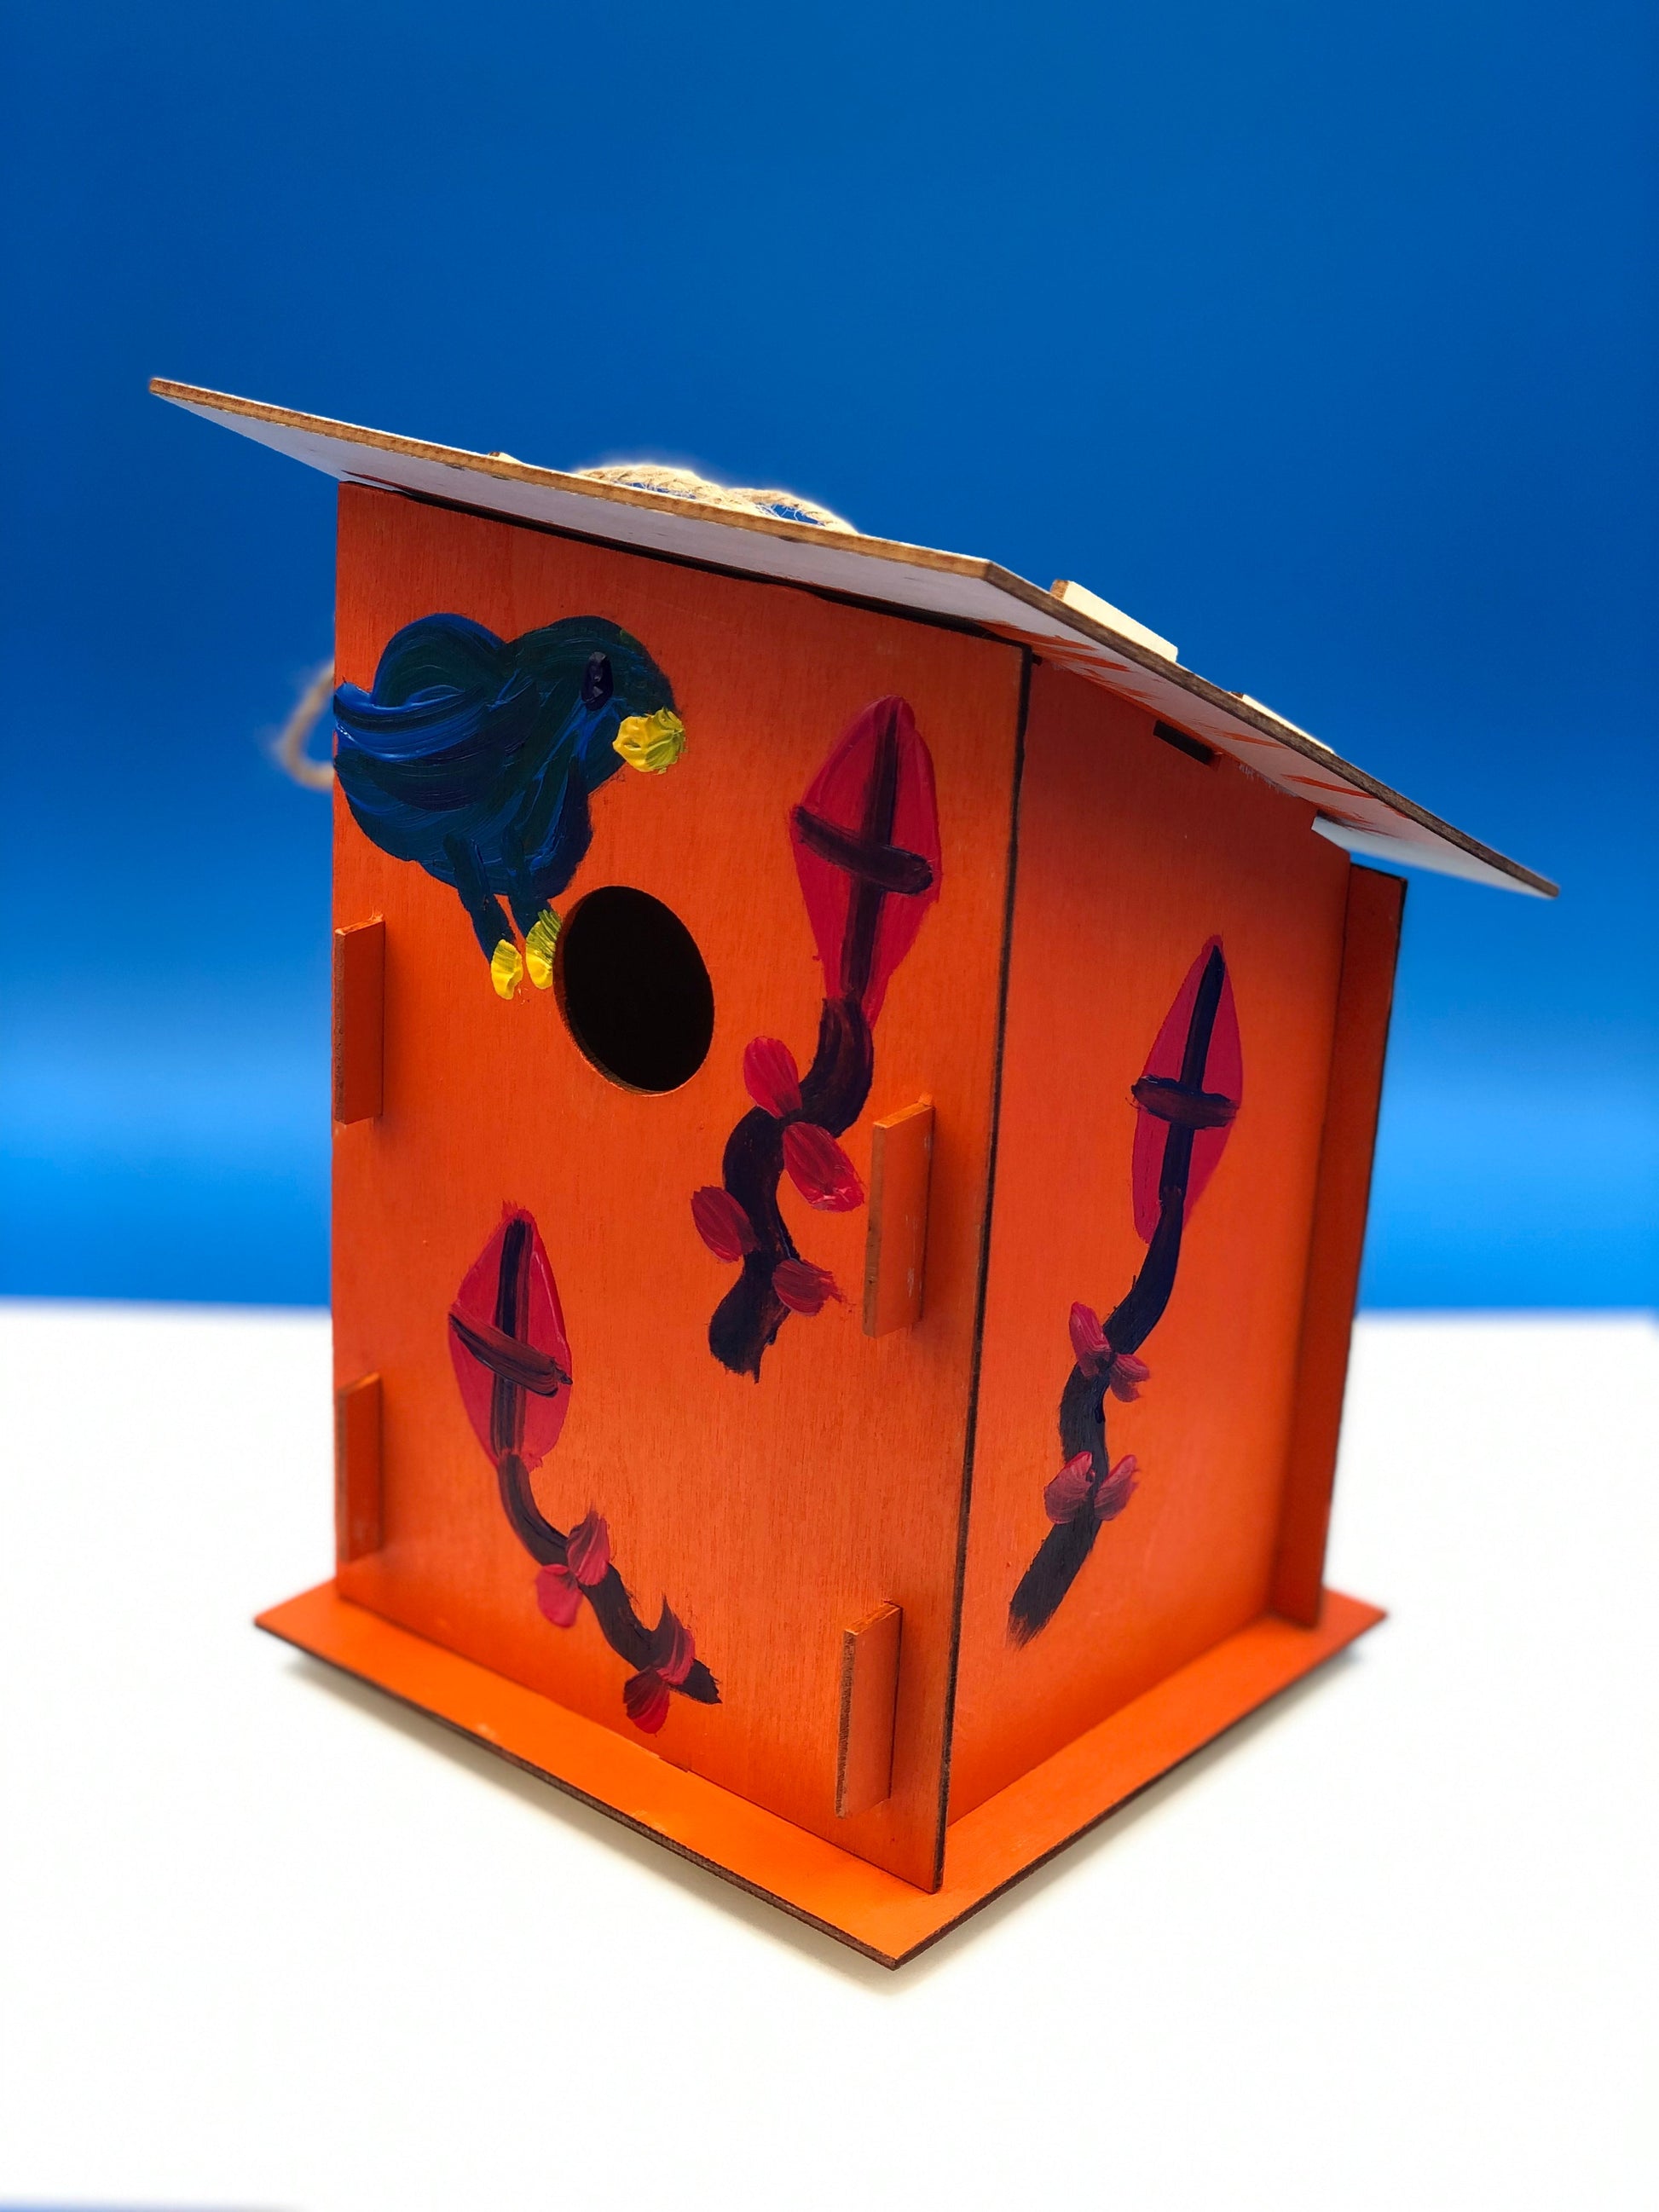 Decorate a birdhouse Kids STEM